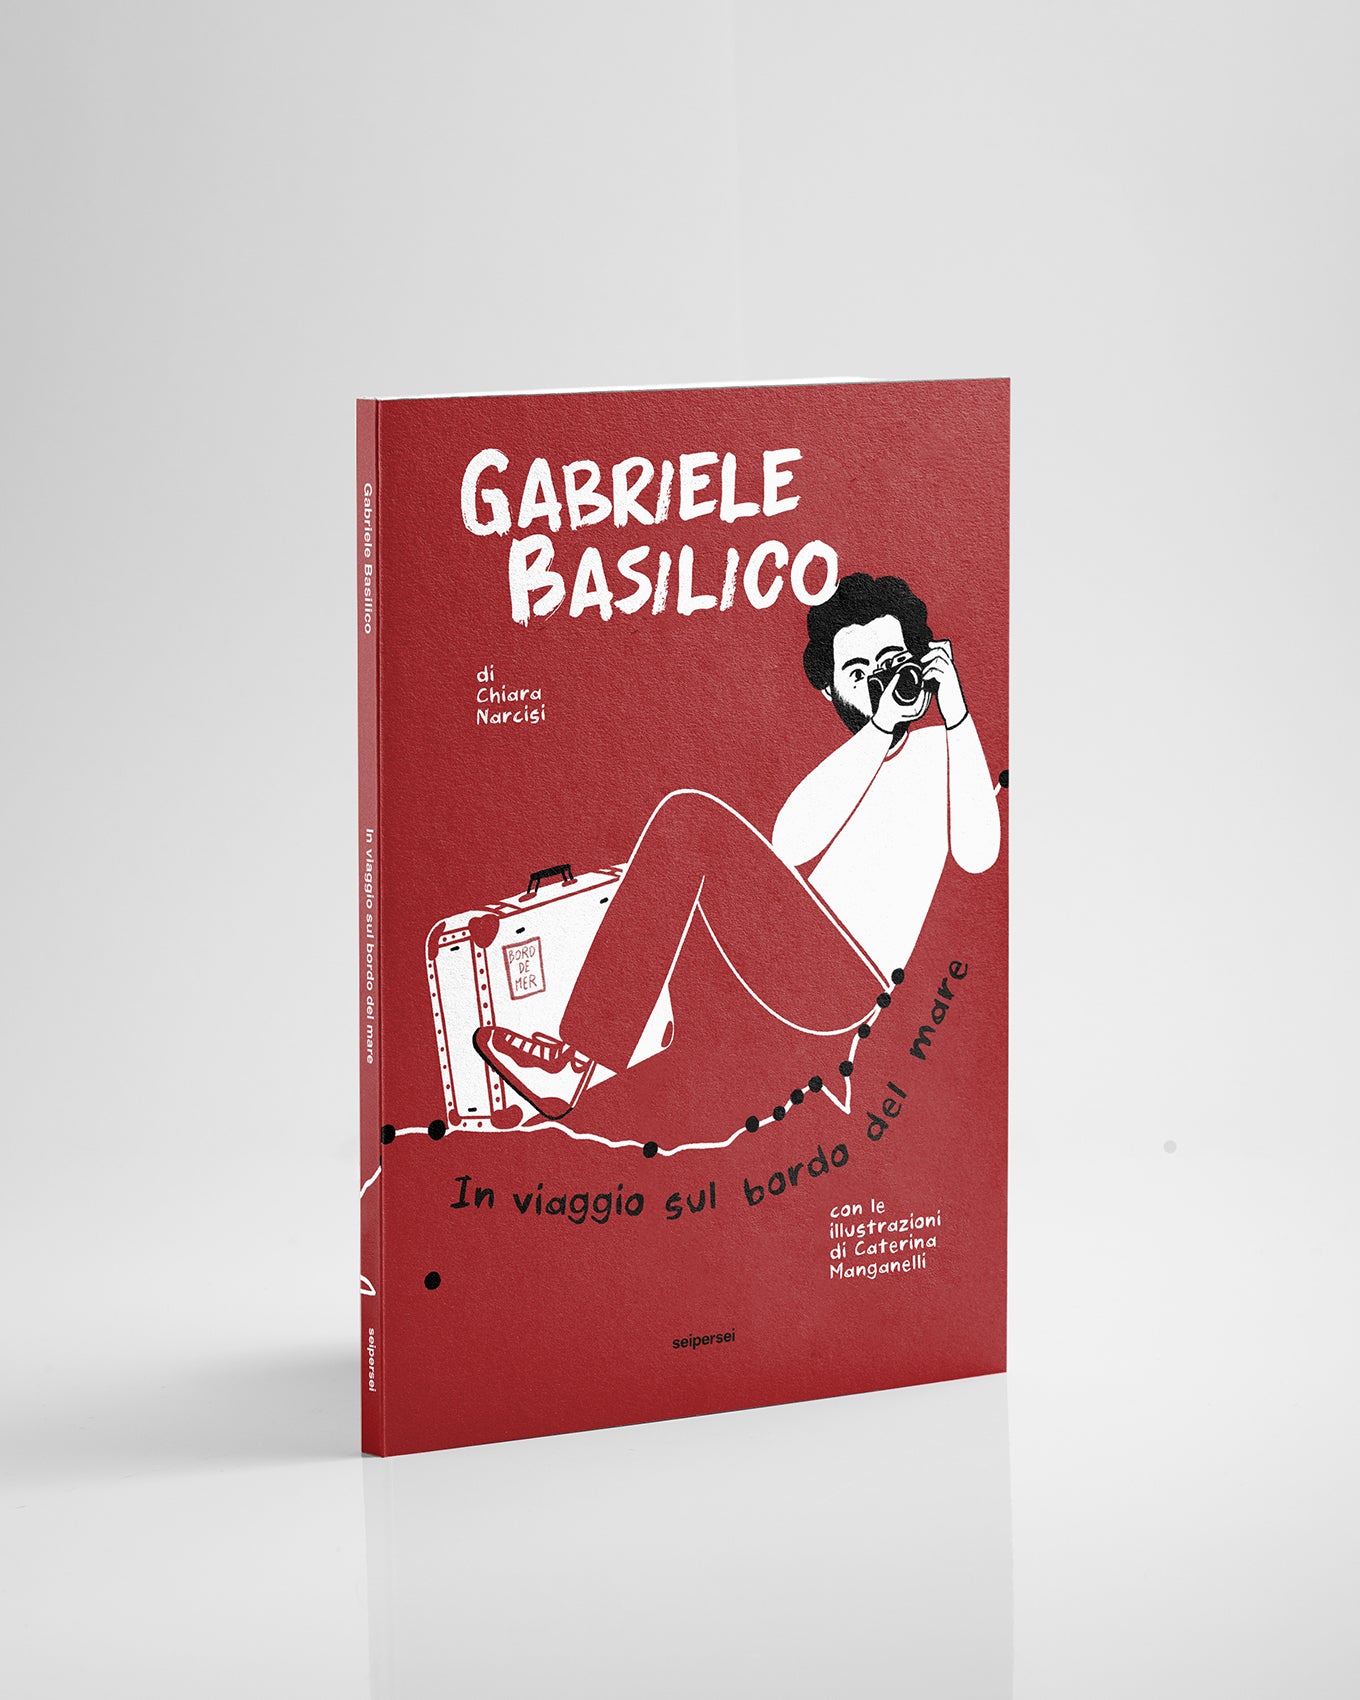 "Gabriele Basilico, in viaggio sul bordo del mare"